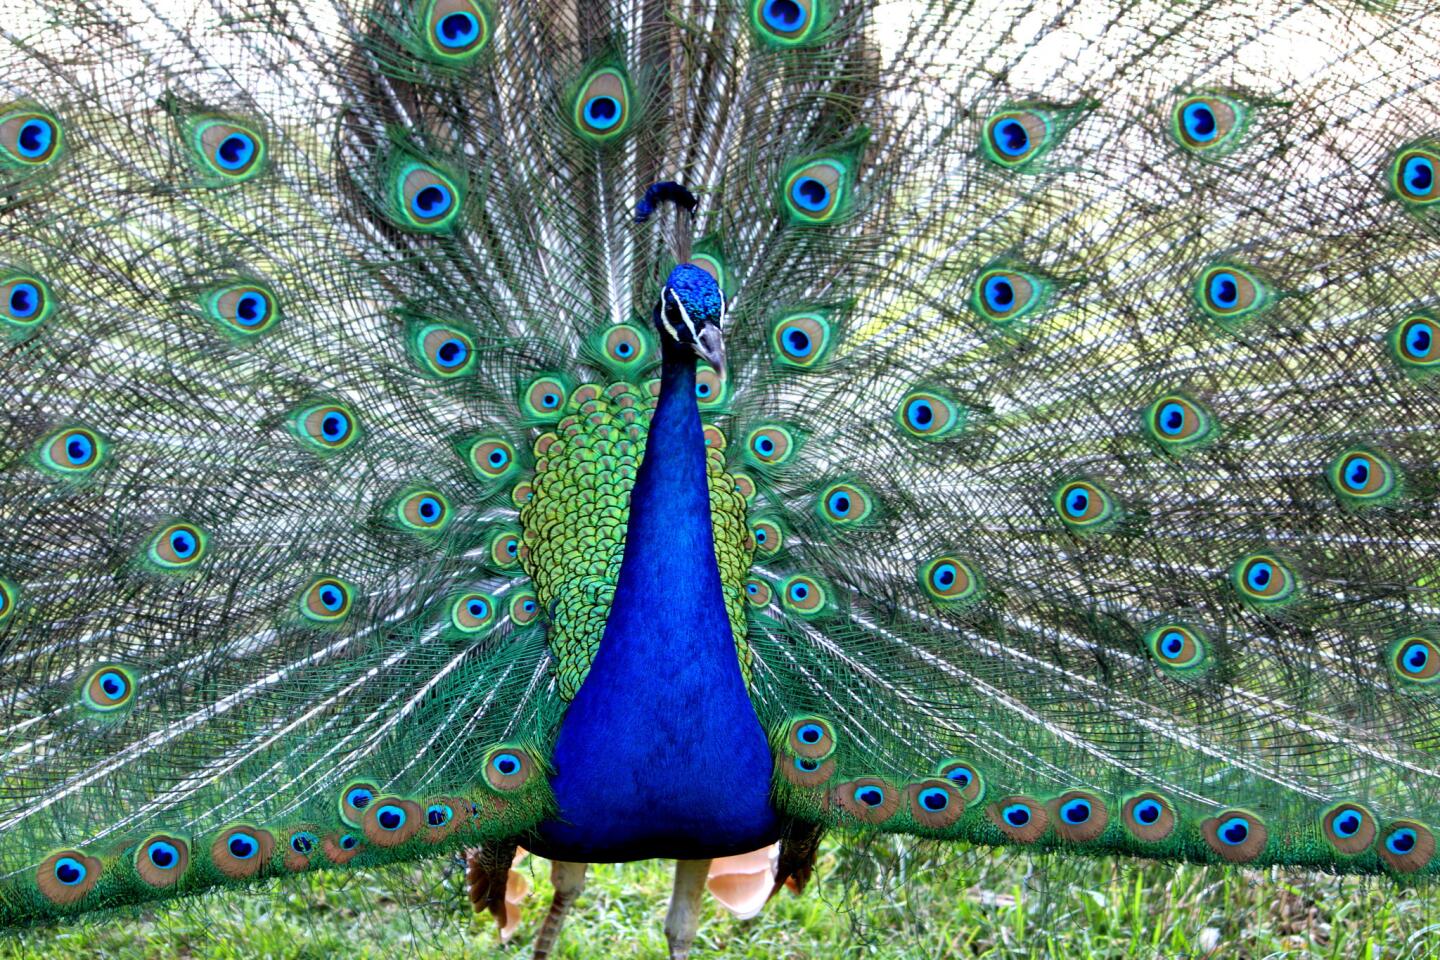 Peacocks in California